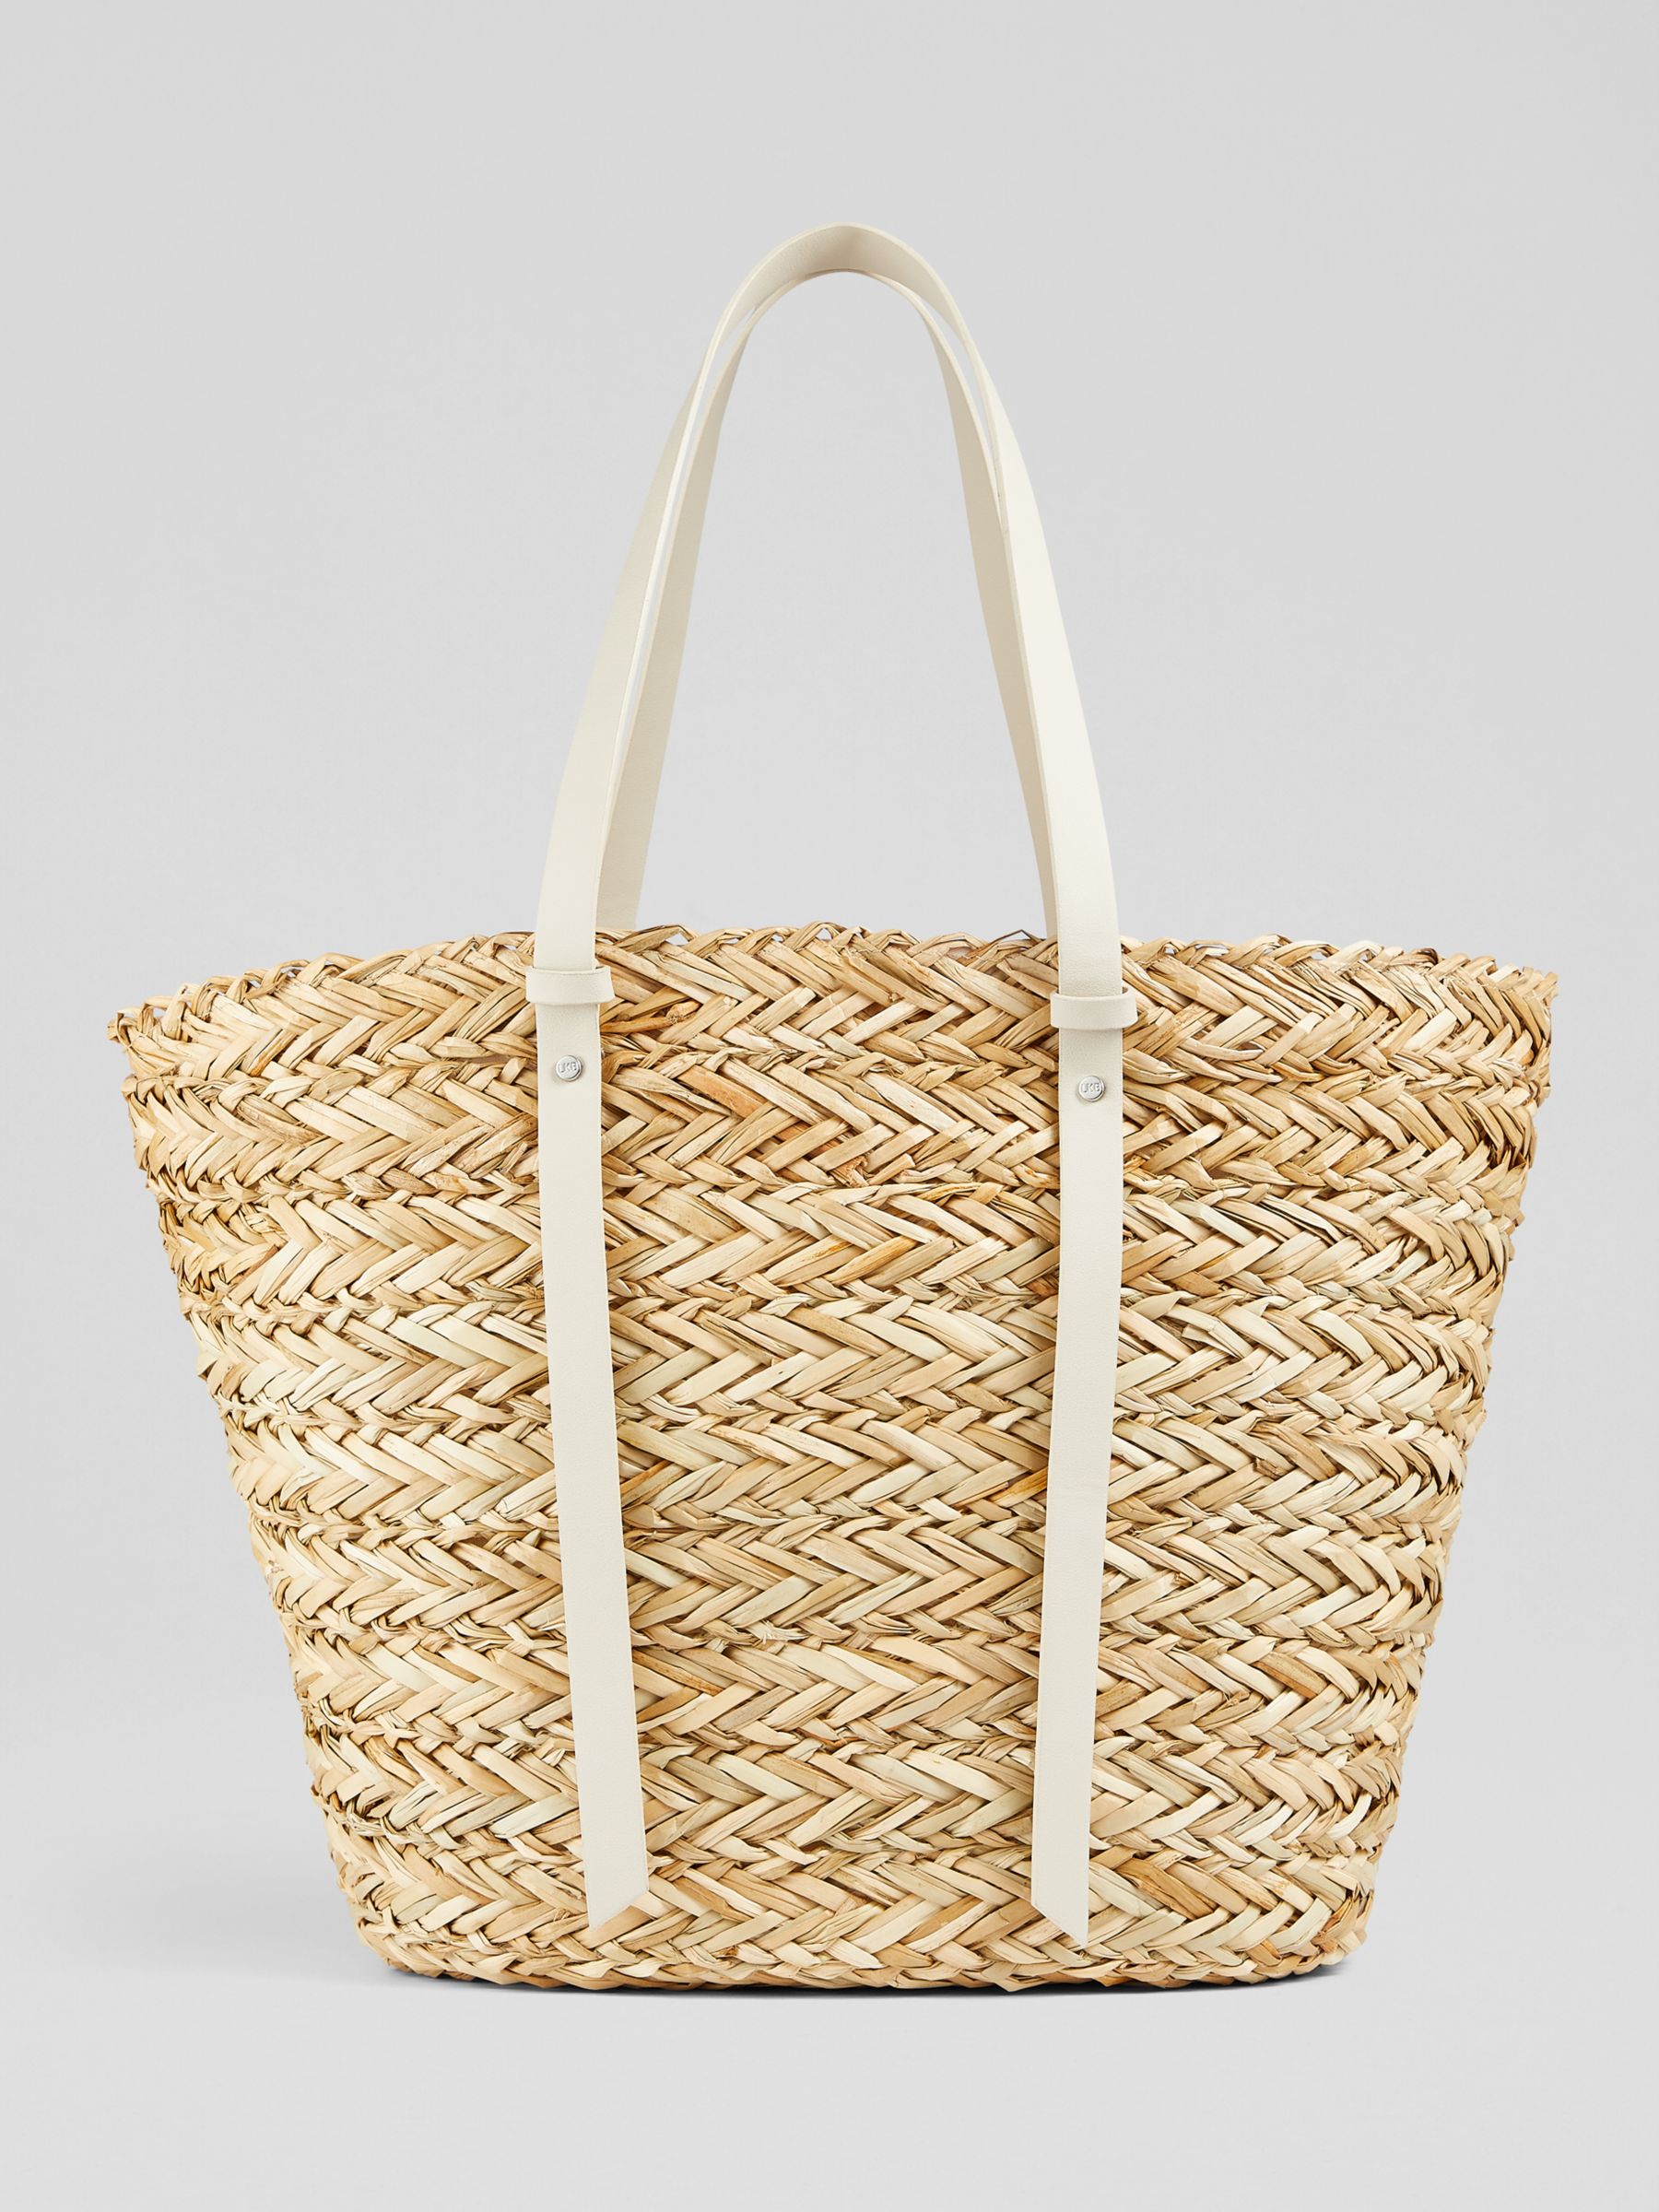 L.K.Bennett Viola Straw Tote Bag, White/Natural, One Size